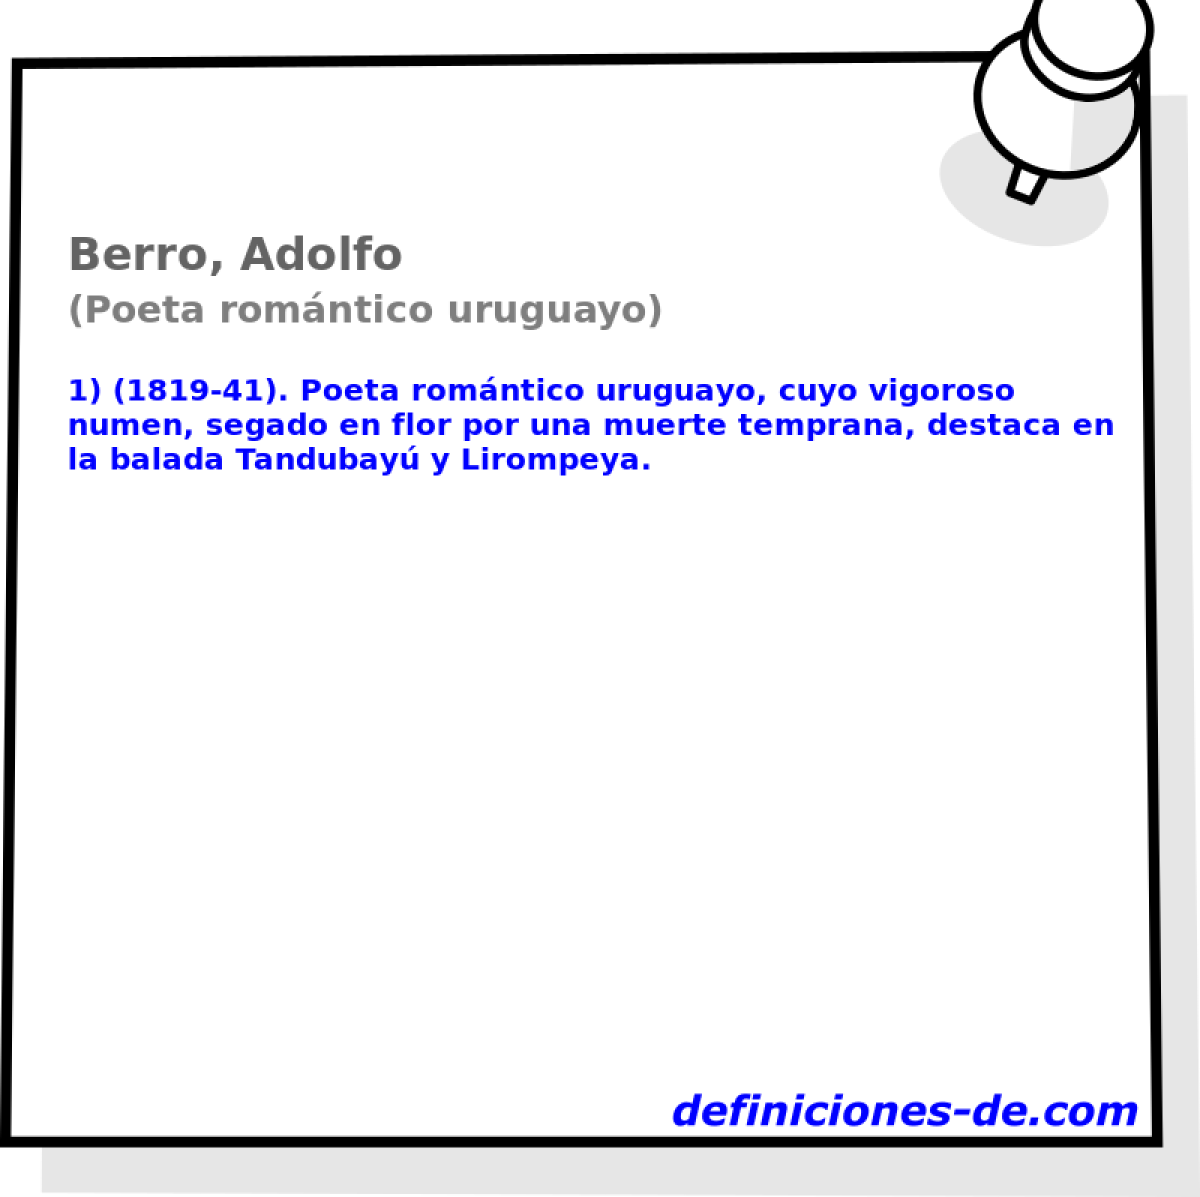 Berro, Adolfo (Poeta romntico uruguayo)